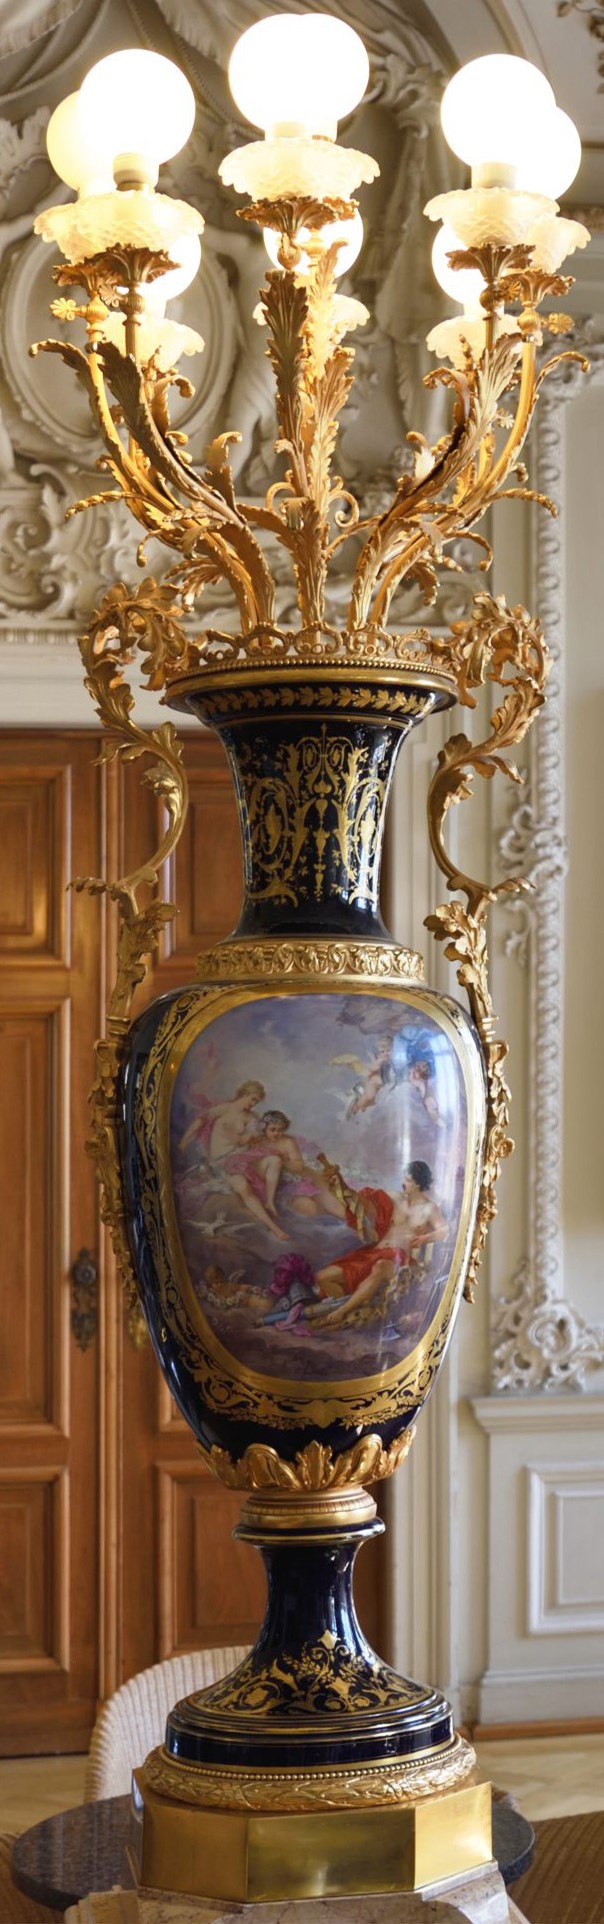 2018 05 PhiRue Beletage001 Vase